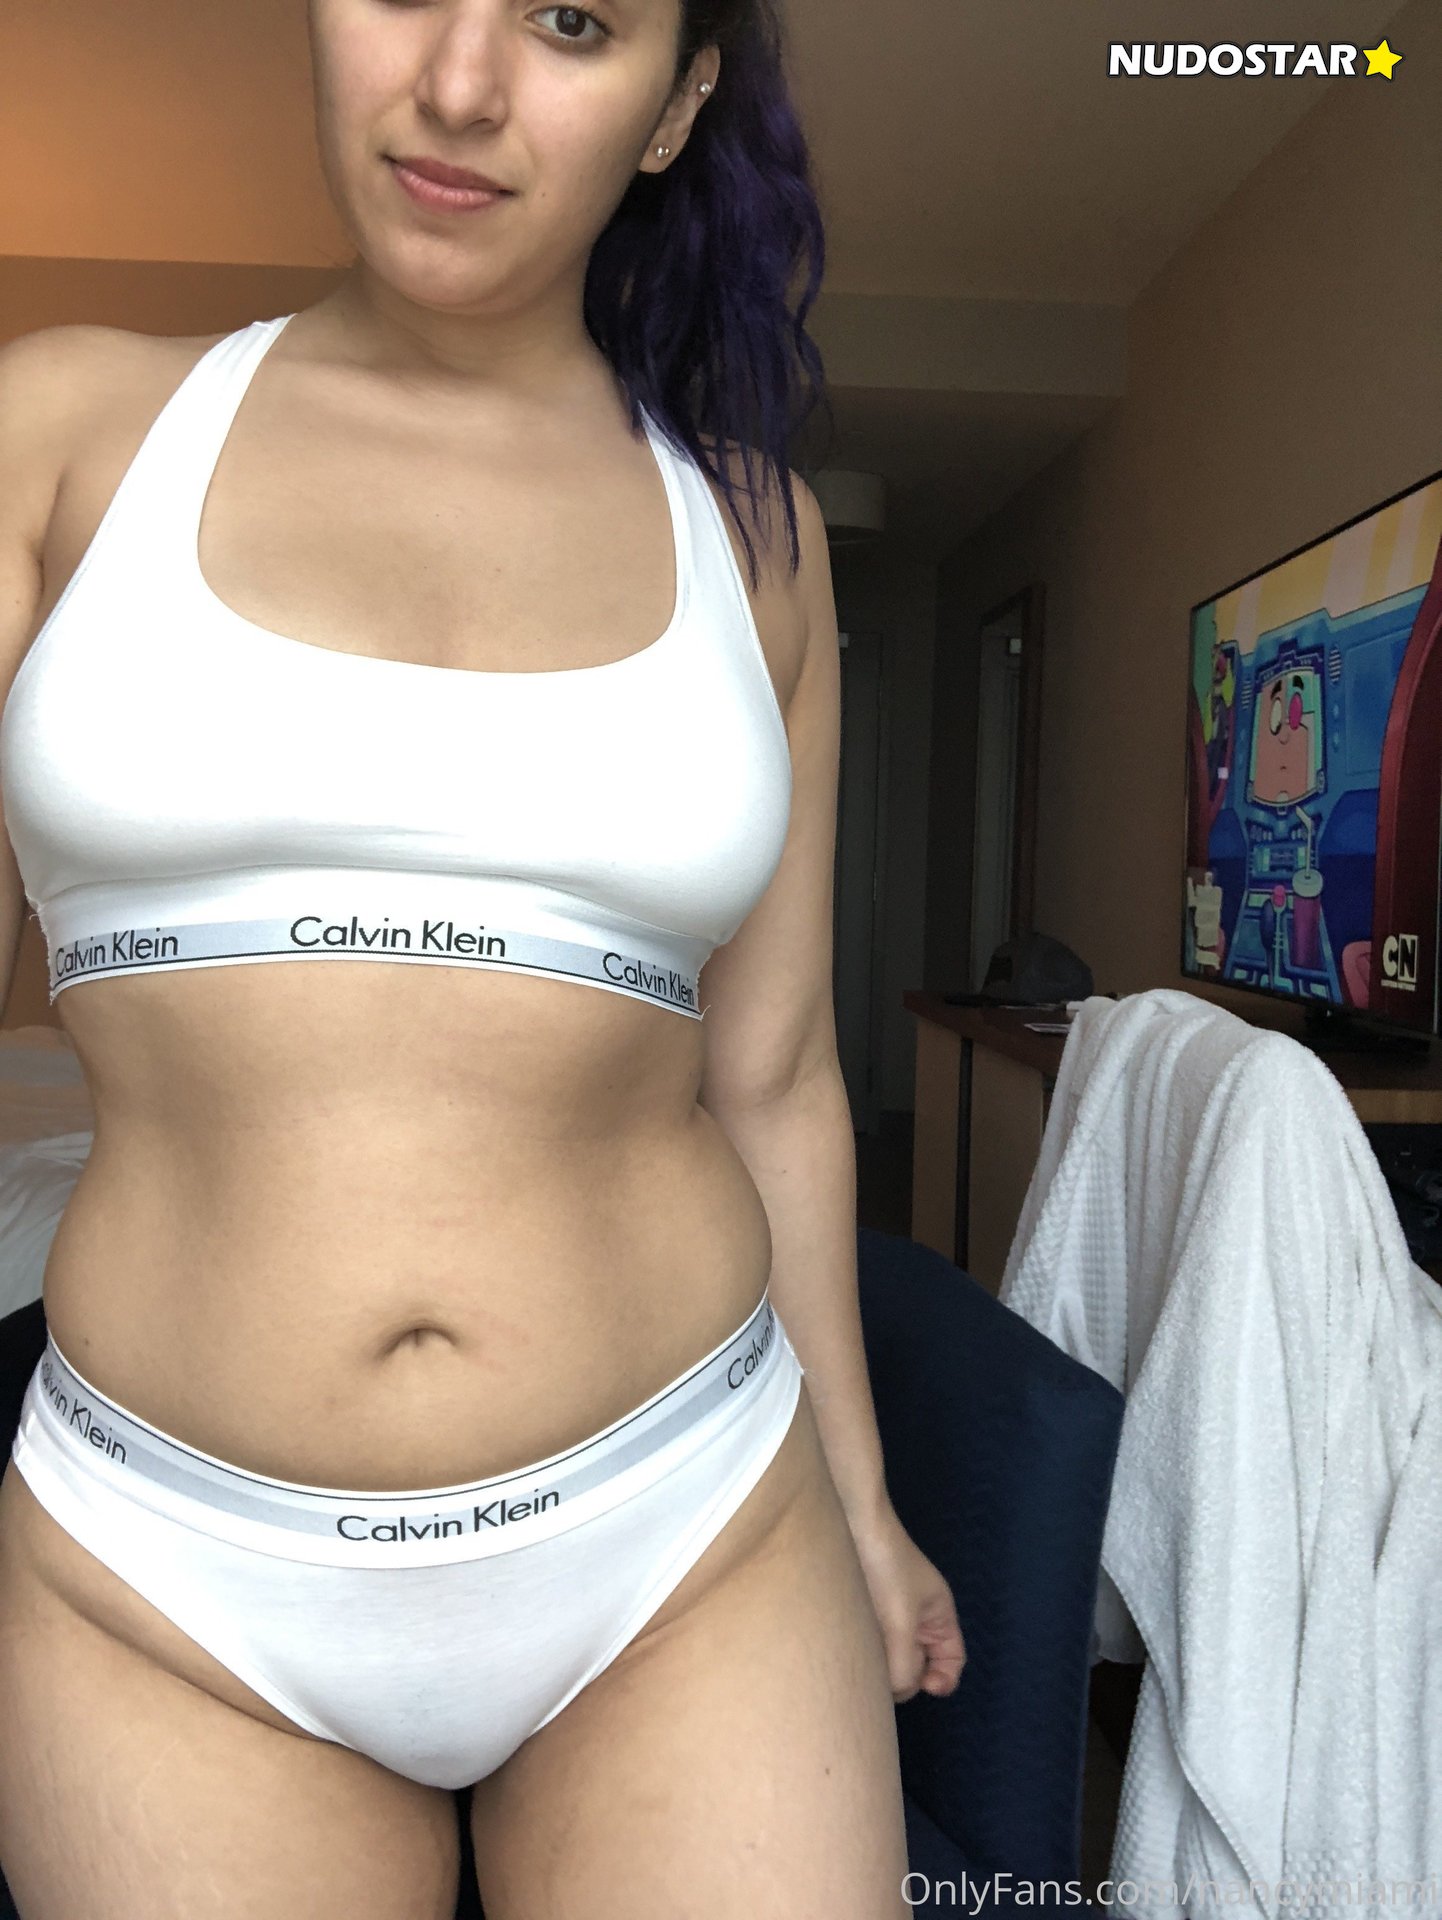 Nancy Miami – iLoveNancyMiami OnlyFans Nude Leaks (27 Photos)